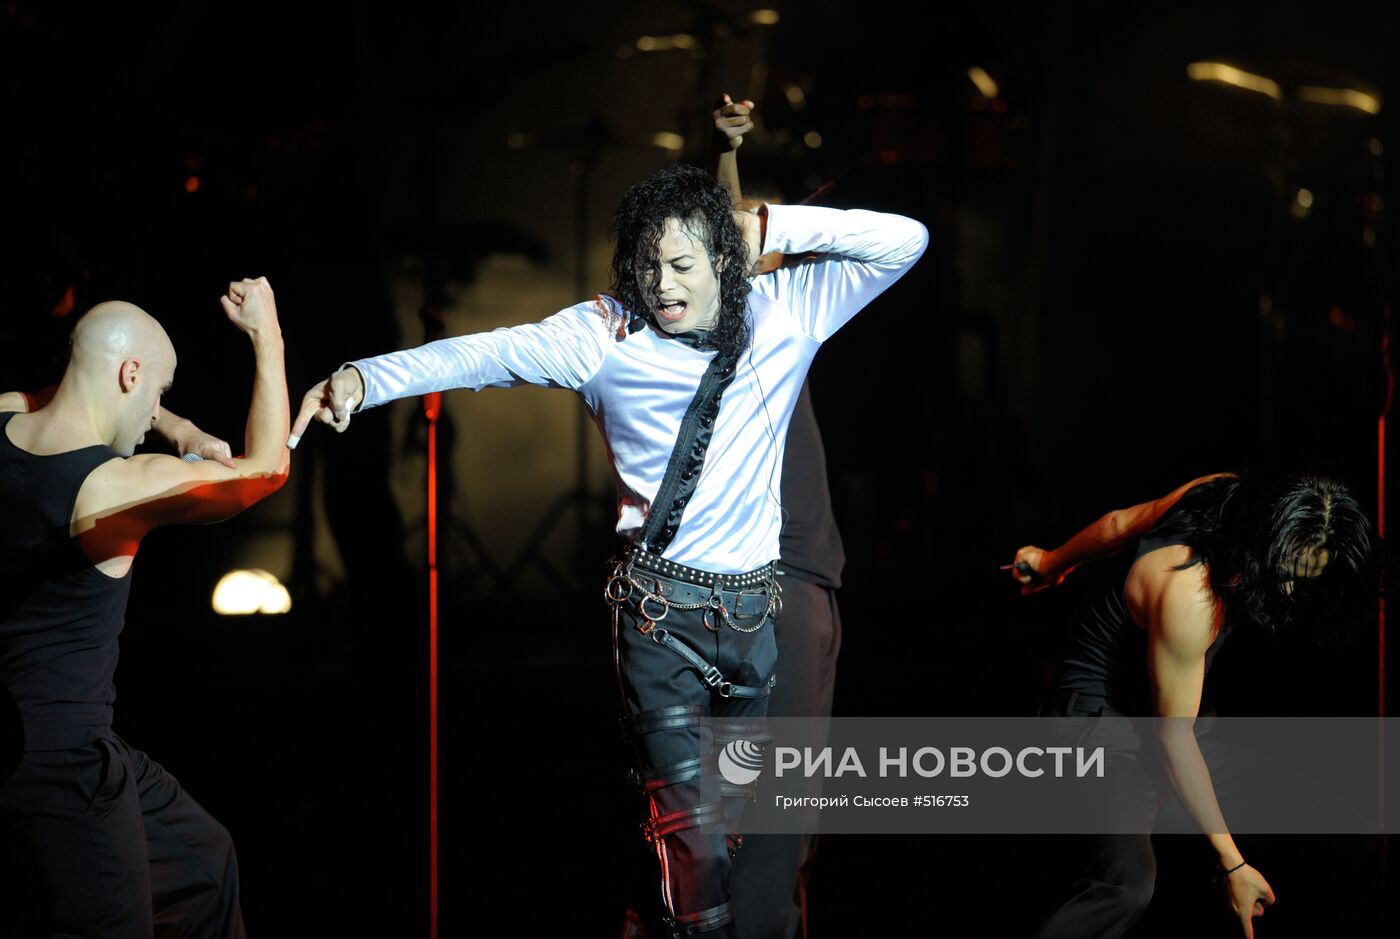 Шоу-трибьют King of Pop: The Show в Кремле